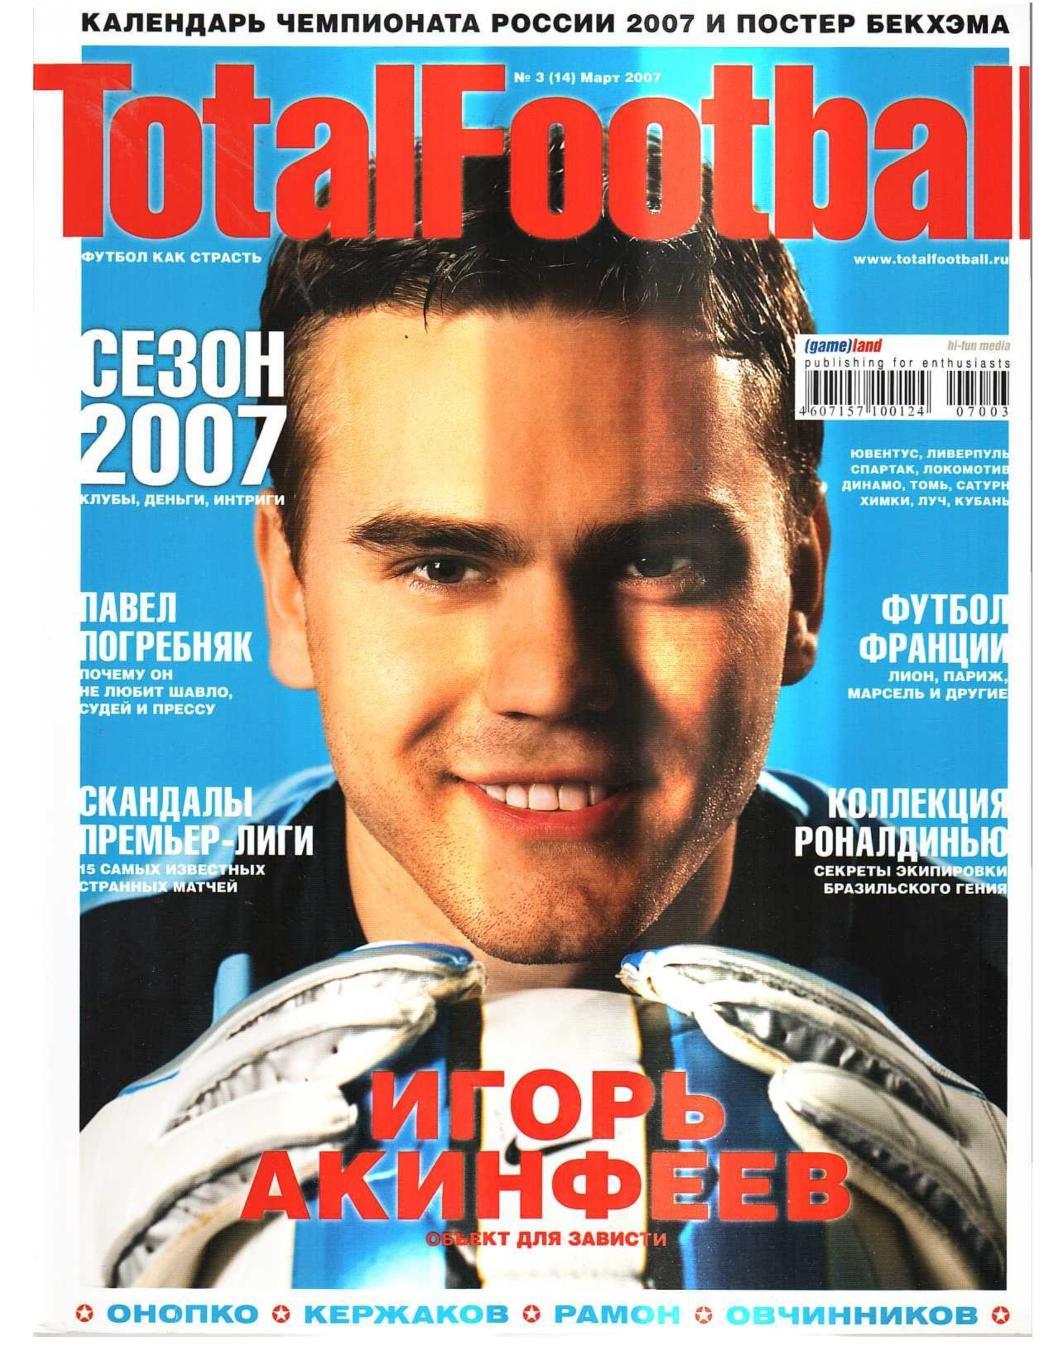 TotalFootball 2007, № 3, март. – 114 с. 2 экземпляра